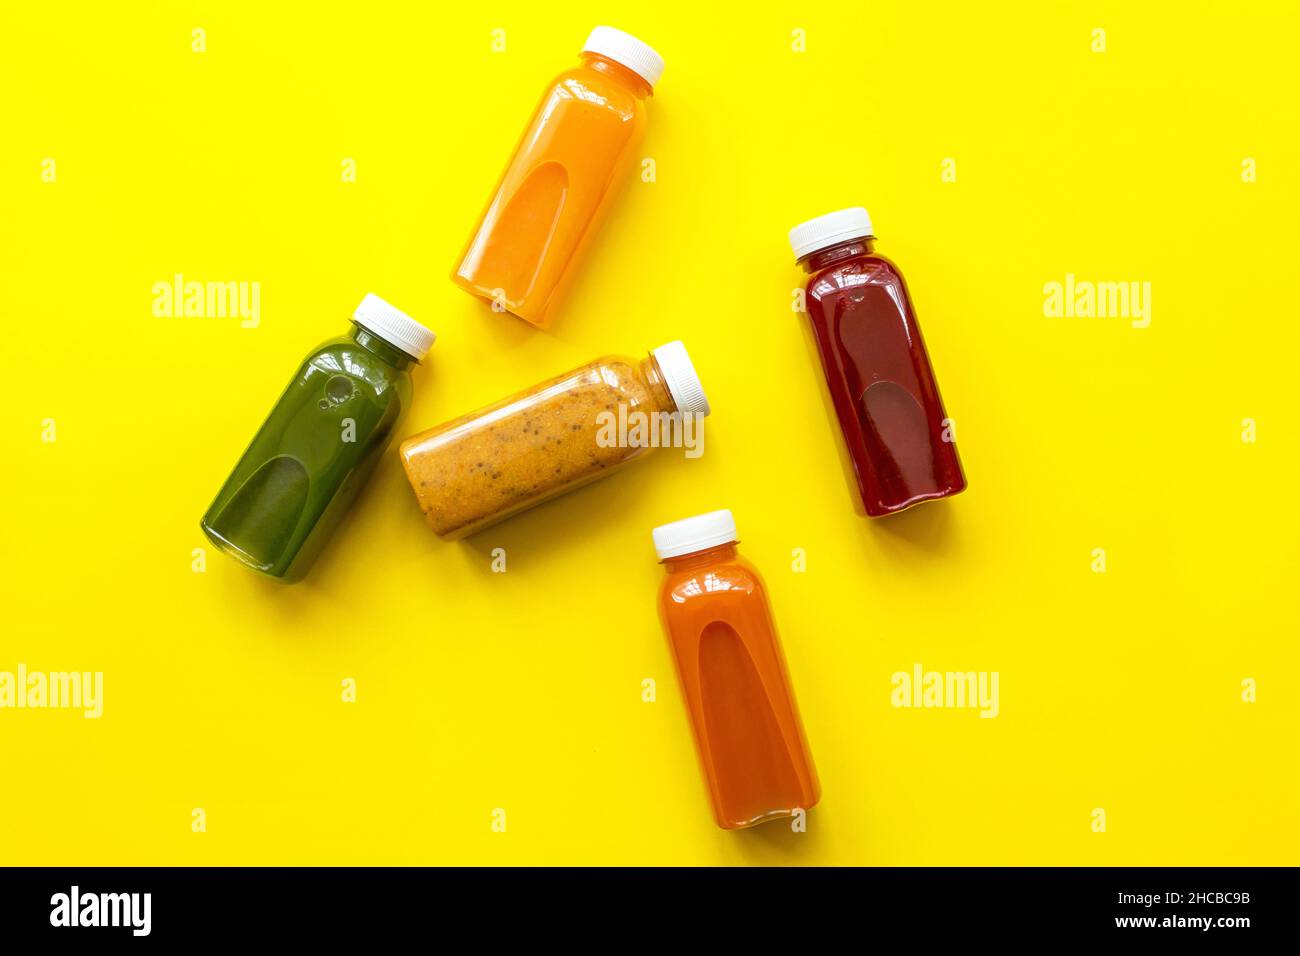 Zumos frescos o cócteles de frutas y verduras en botellas sobre fondo amarillo. El concepto de una dieta o dieta saludable. Ingredientes orgánicos frescos Foto de stock